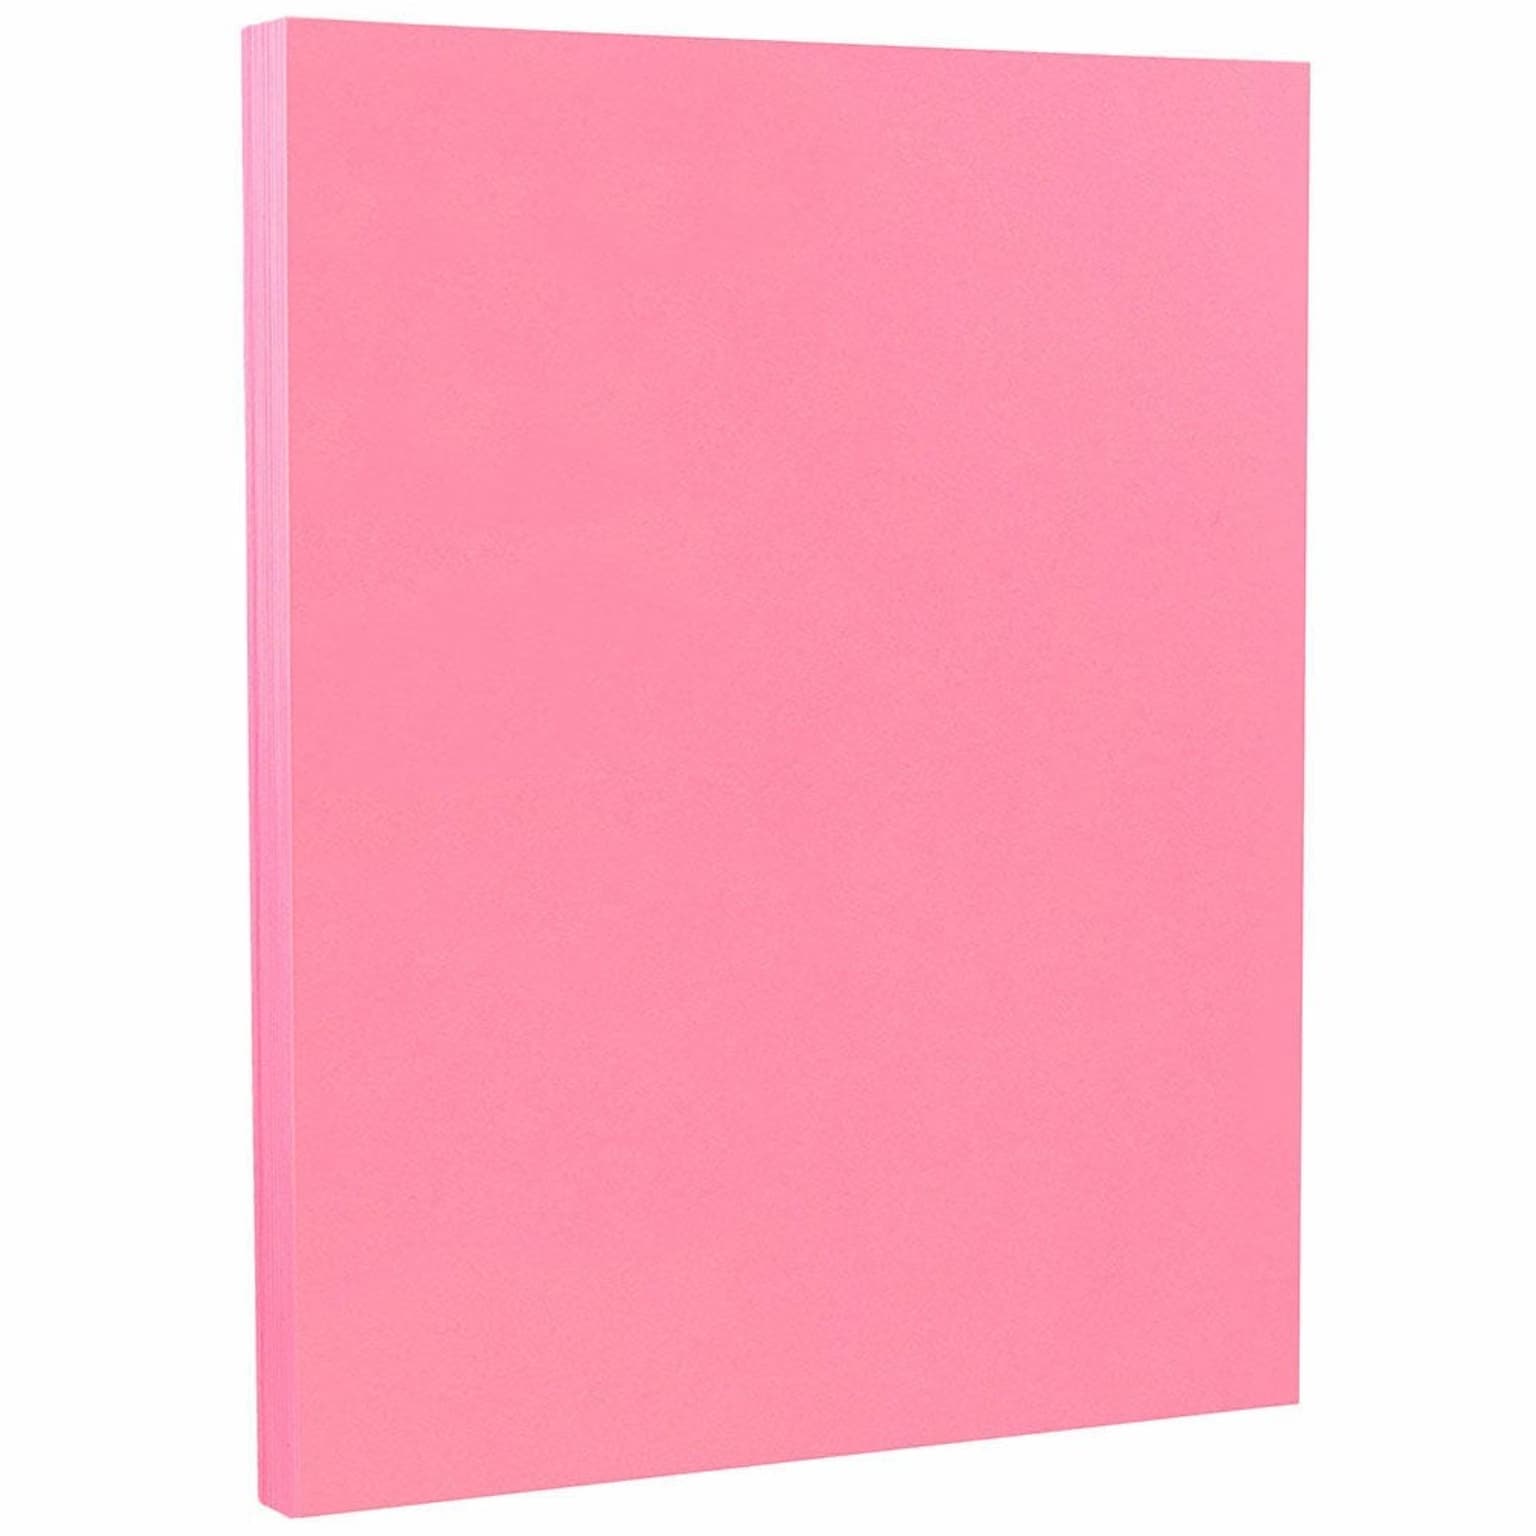 JAM PAPER 8.5 x 11 Color Cardstock, 65lb, Ultra Pink, 100/pack  (103614G)